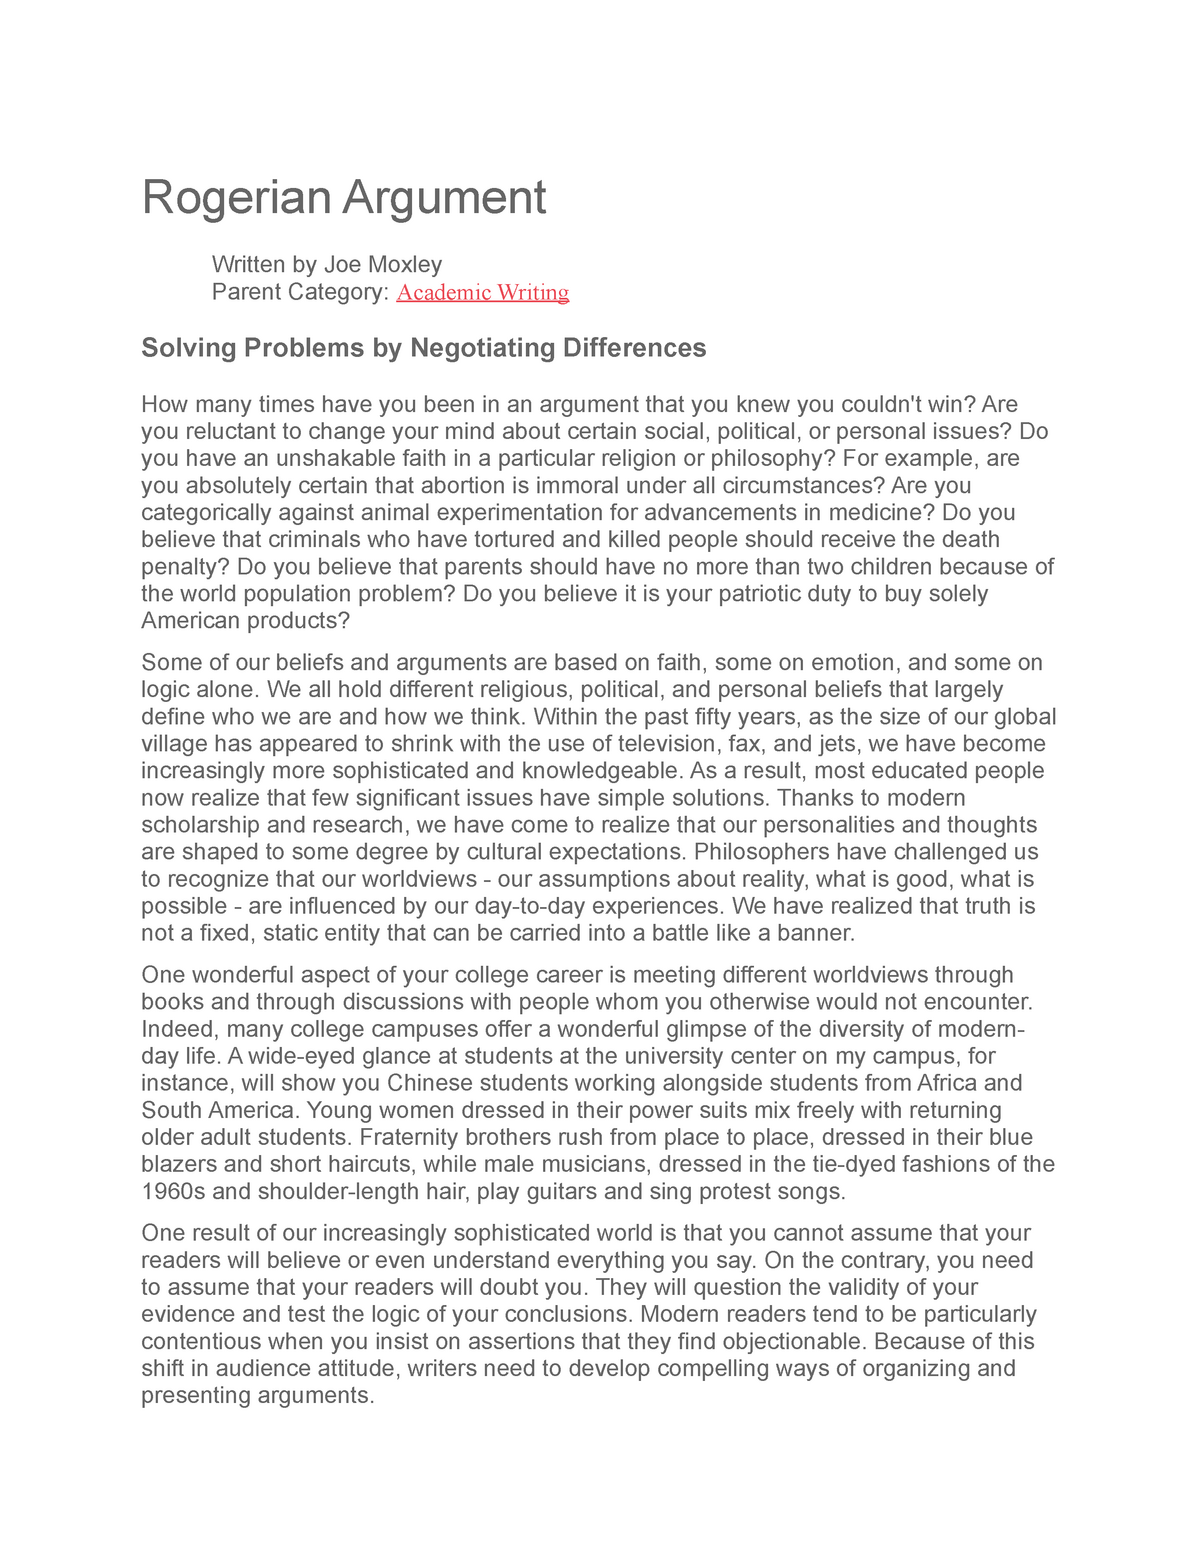 argumentative essay about rogerian argument